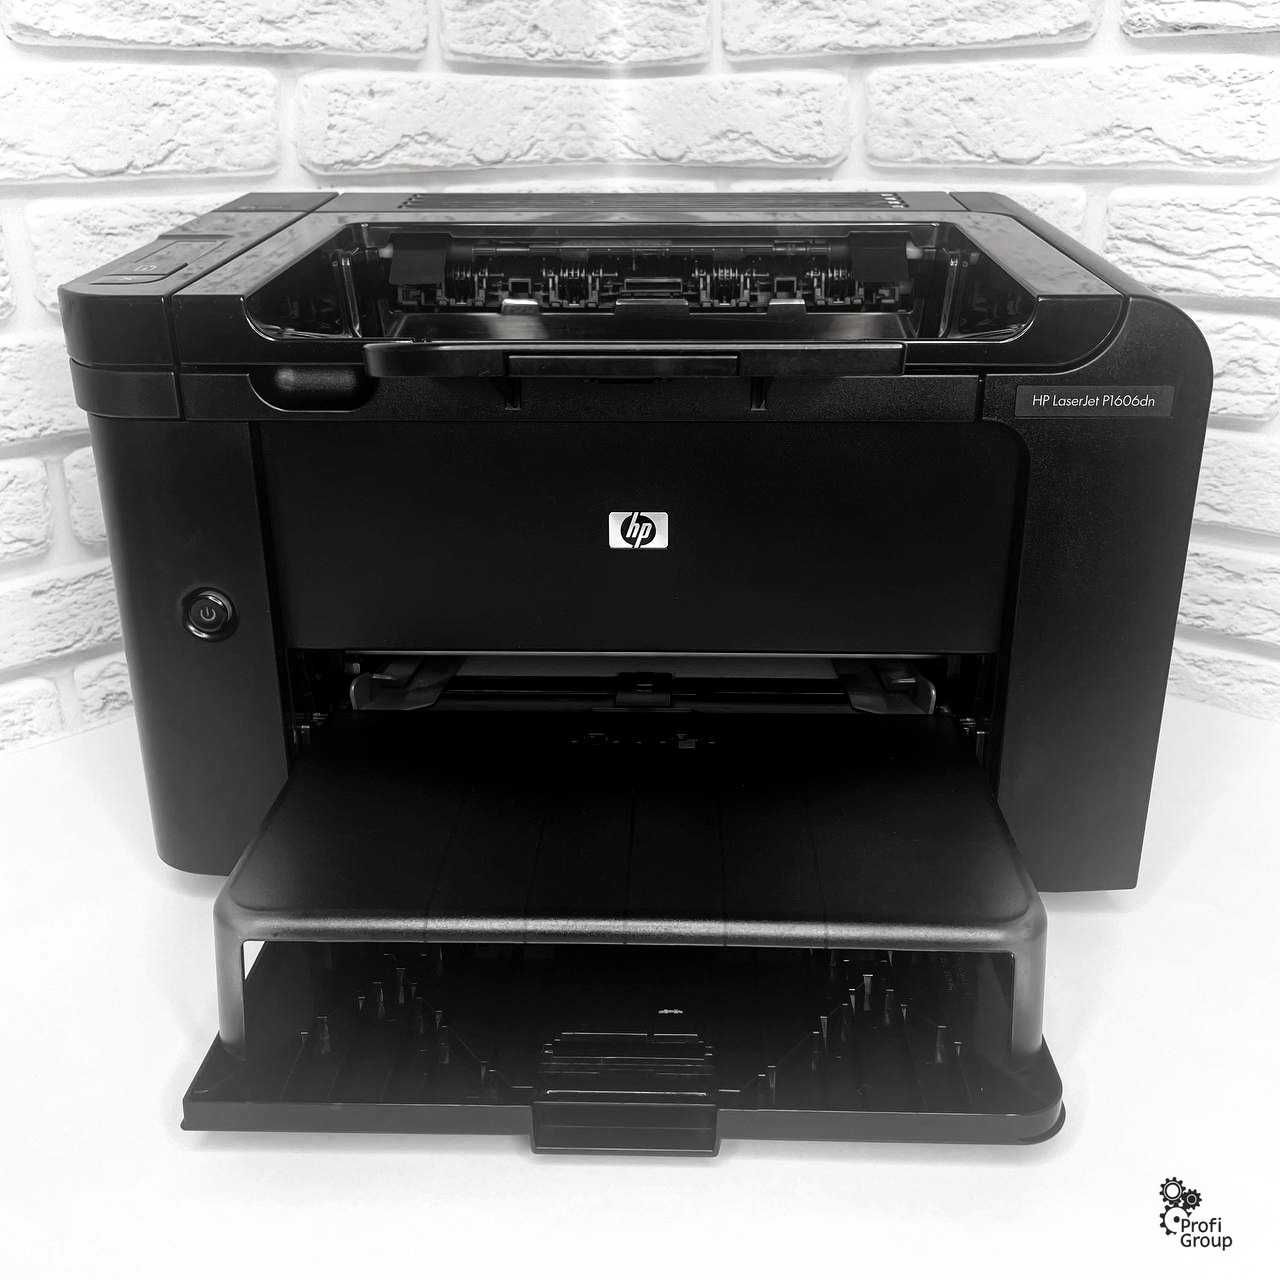 Лазерний принтер HP LaserJet P1606dn. Гарантія 6 місяців.